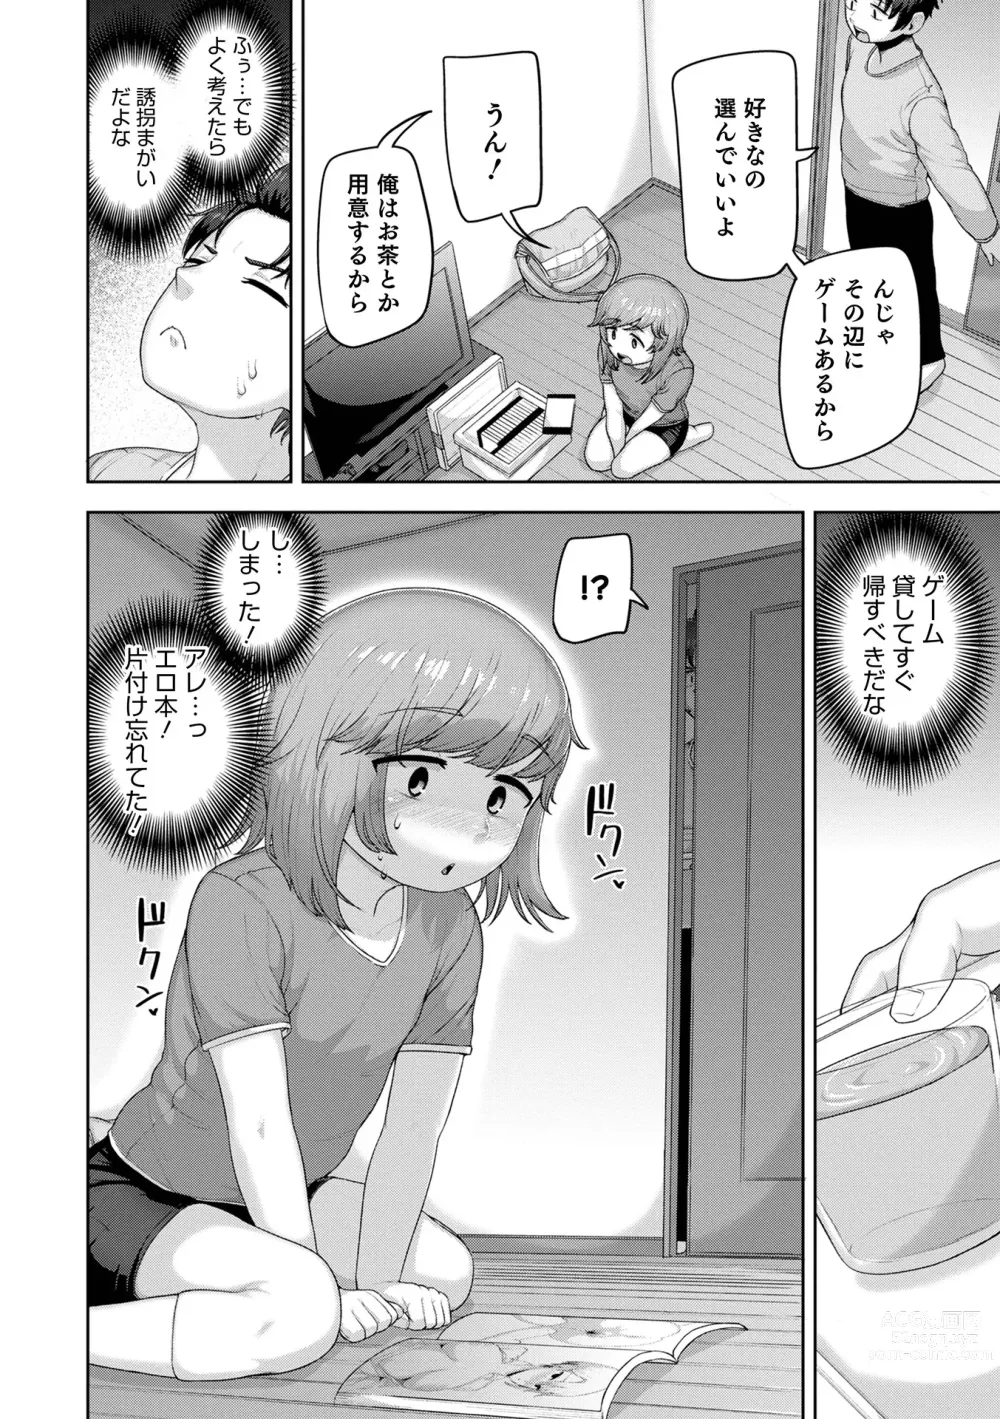 Page 10 of manga Muchiniku Otokonoko Tenshi’s